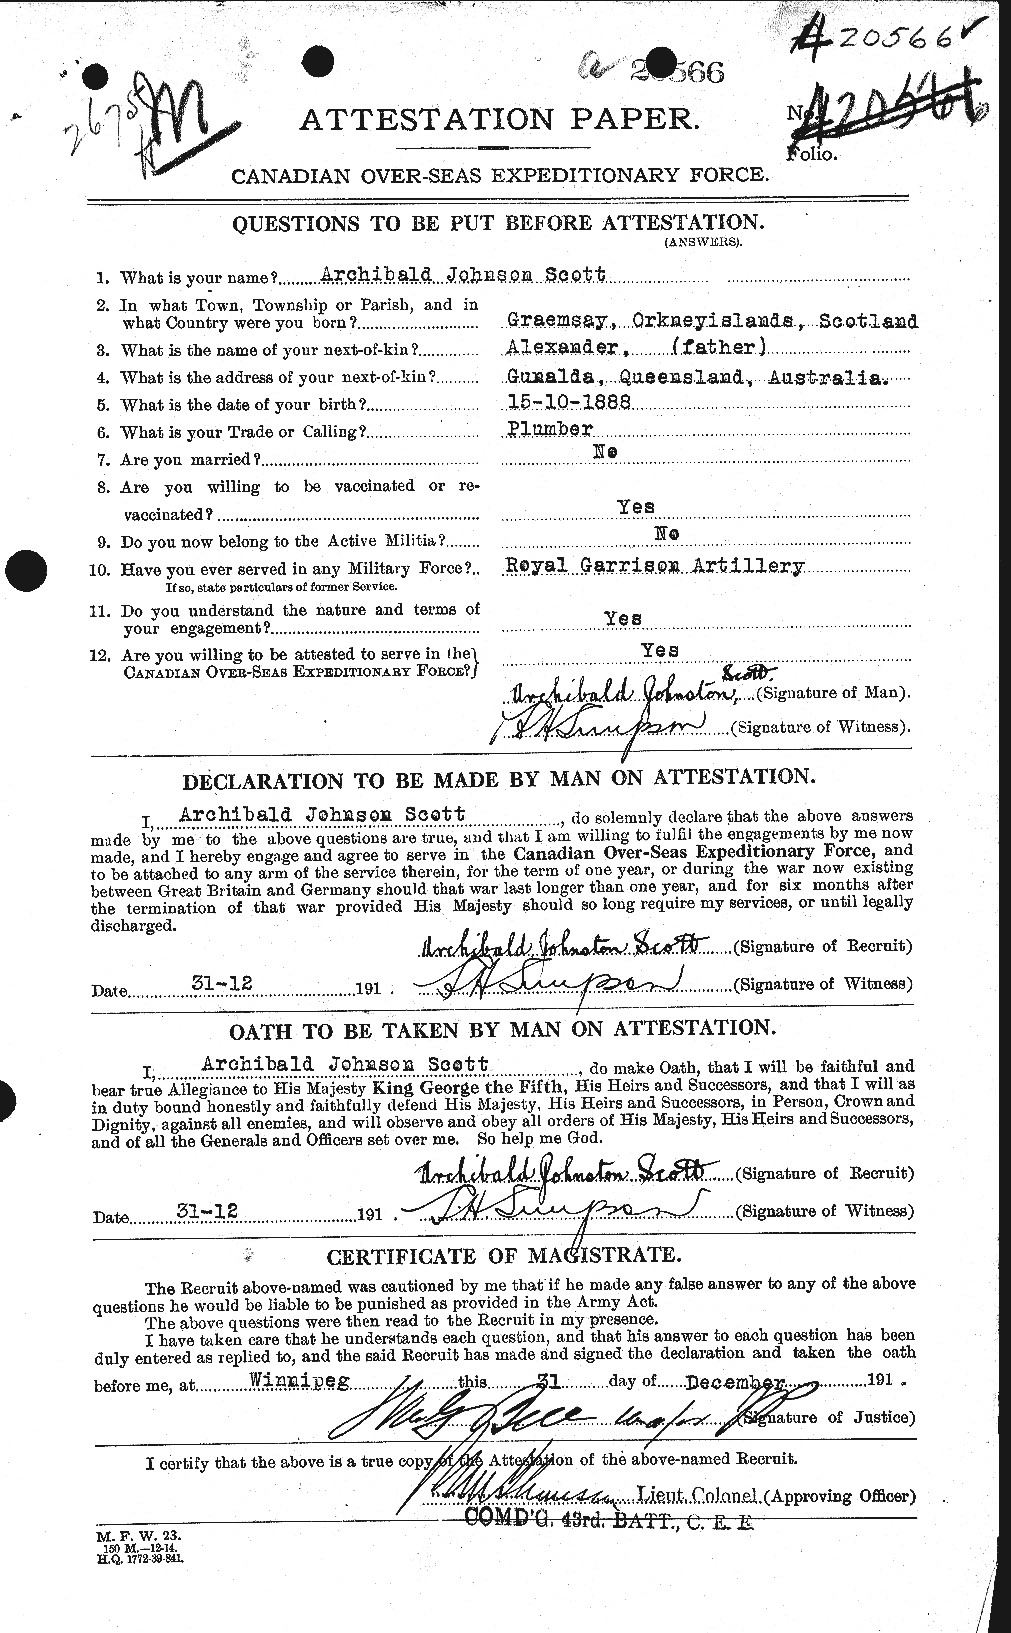 Dossiers du Personnel de la Première Guerre mondiale - CEC 086427a